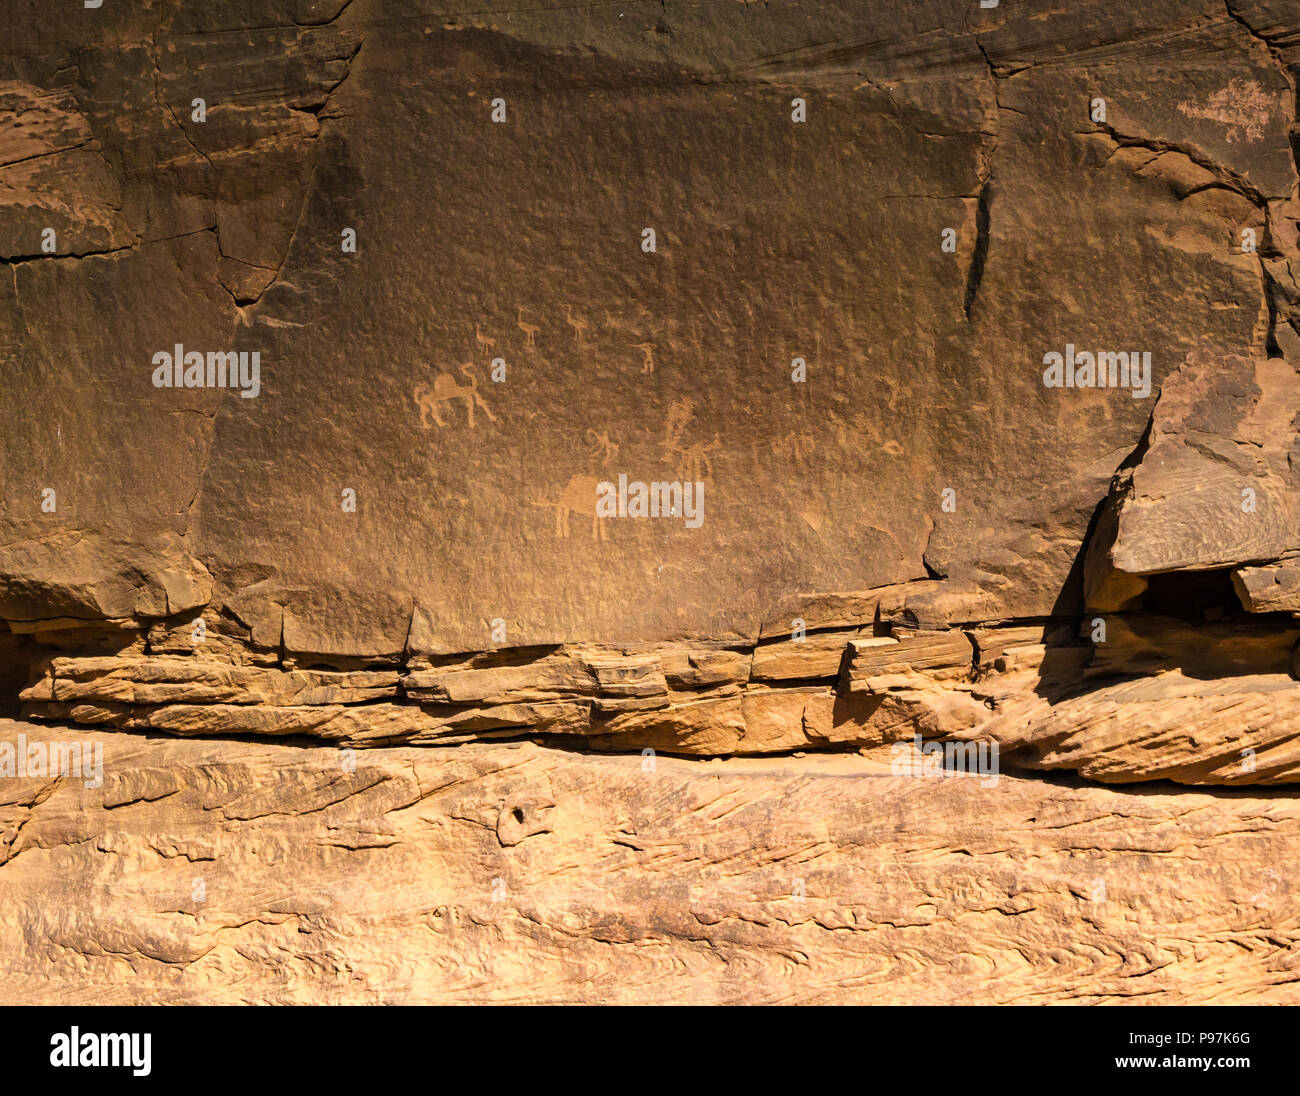 Petroglyph incisioni rupestri del cammello e uccelli Wadi Rum vallata desertica, Giordania, Medio Oriente Foto Stock